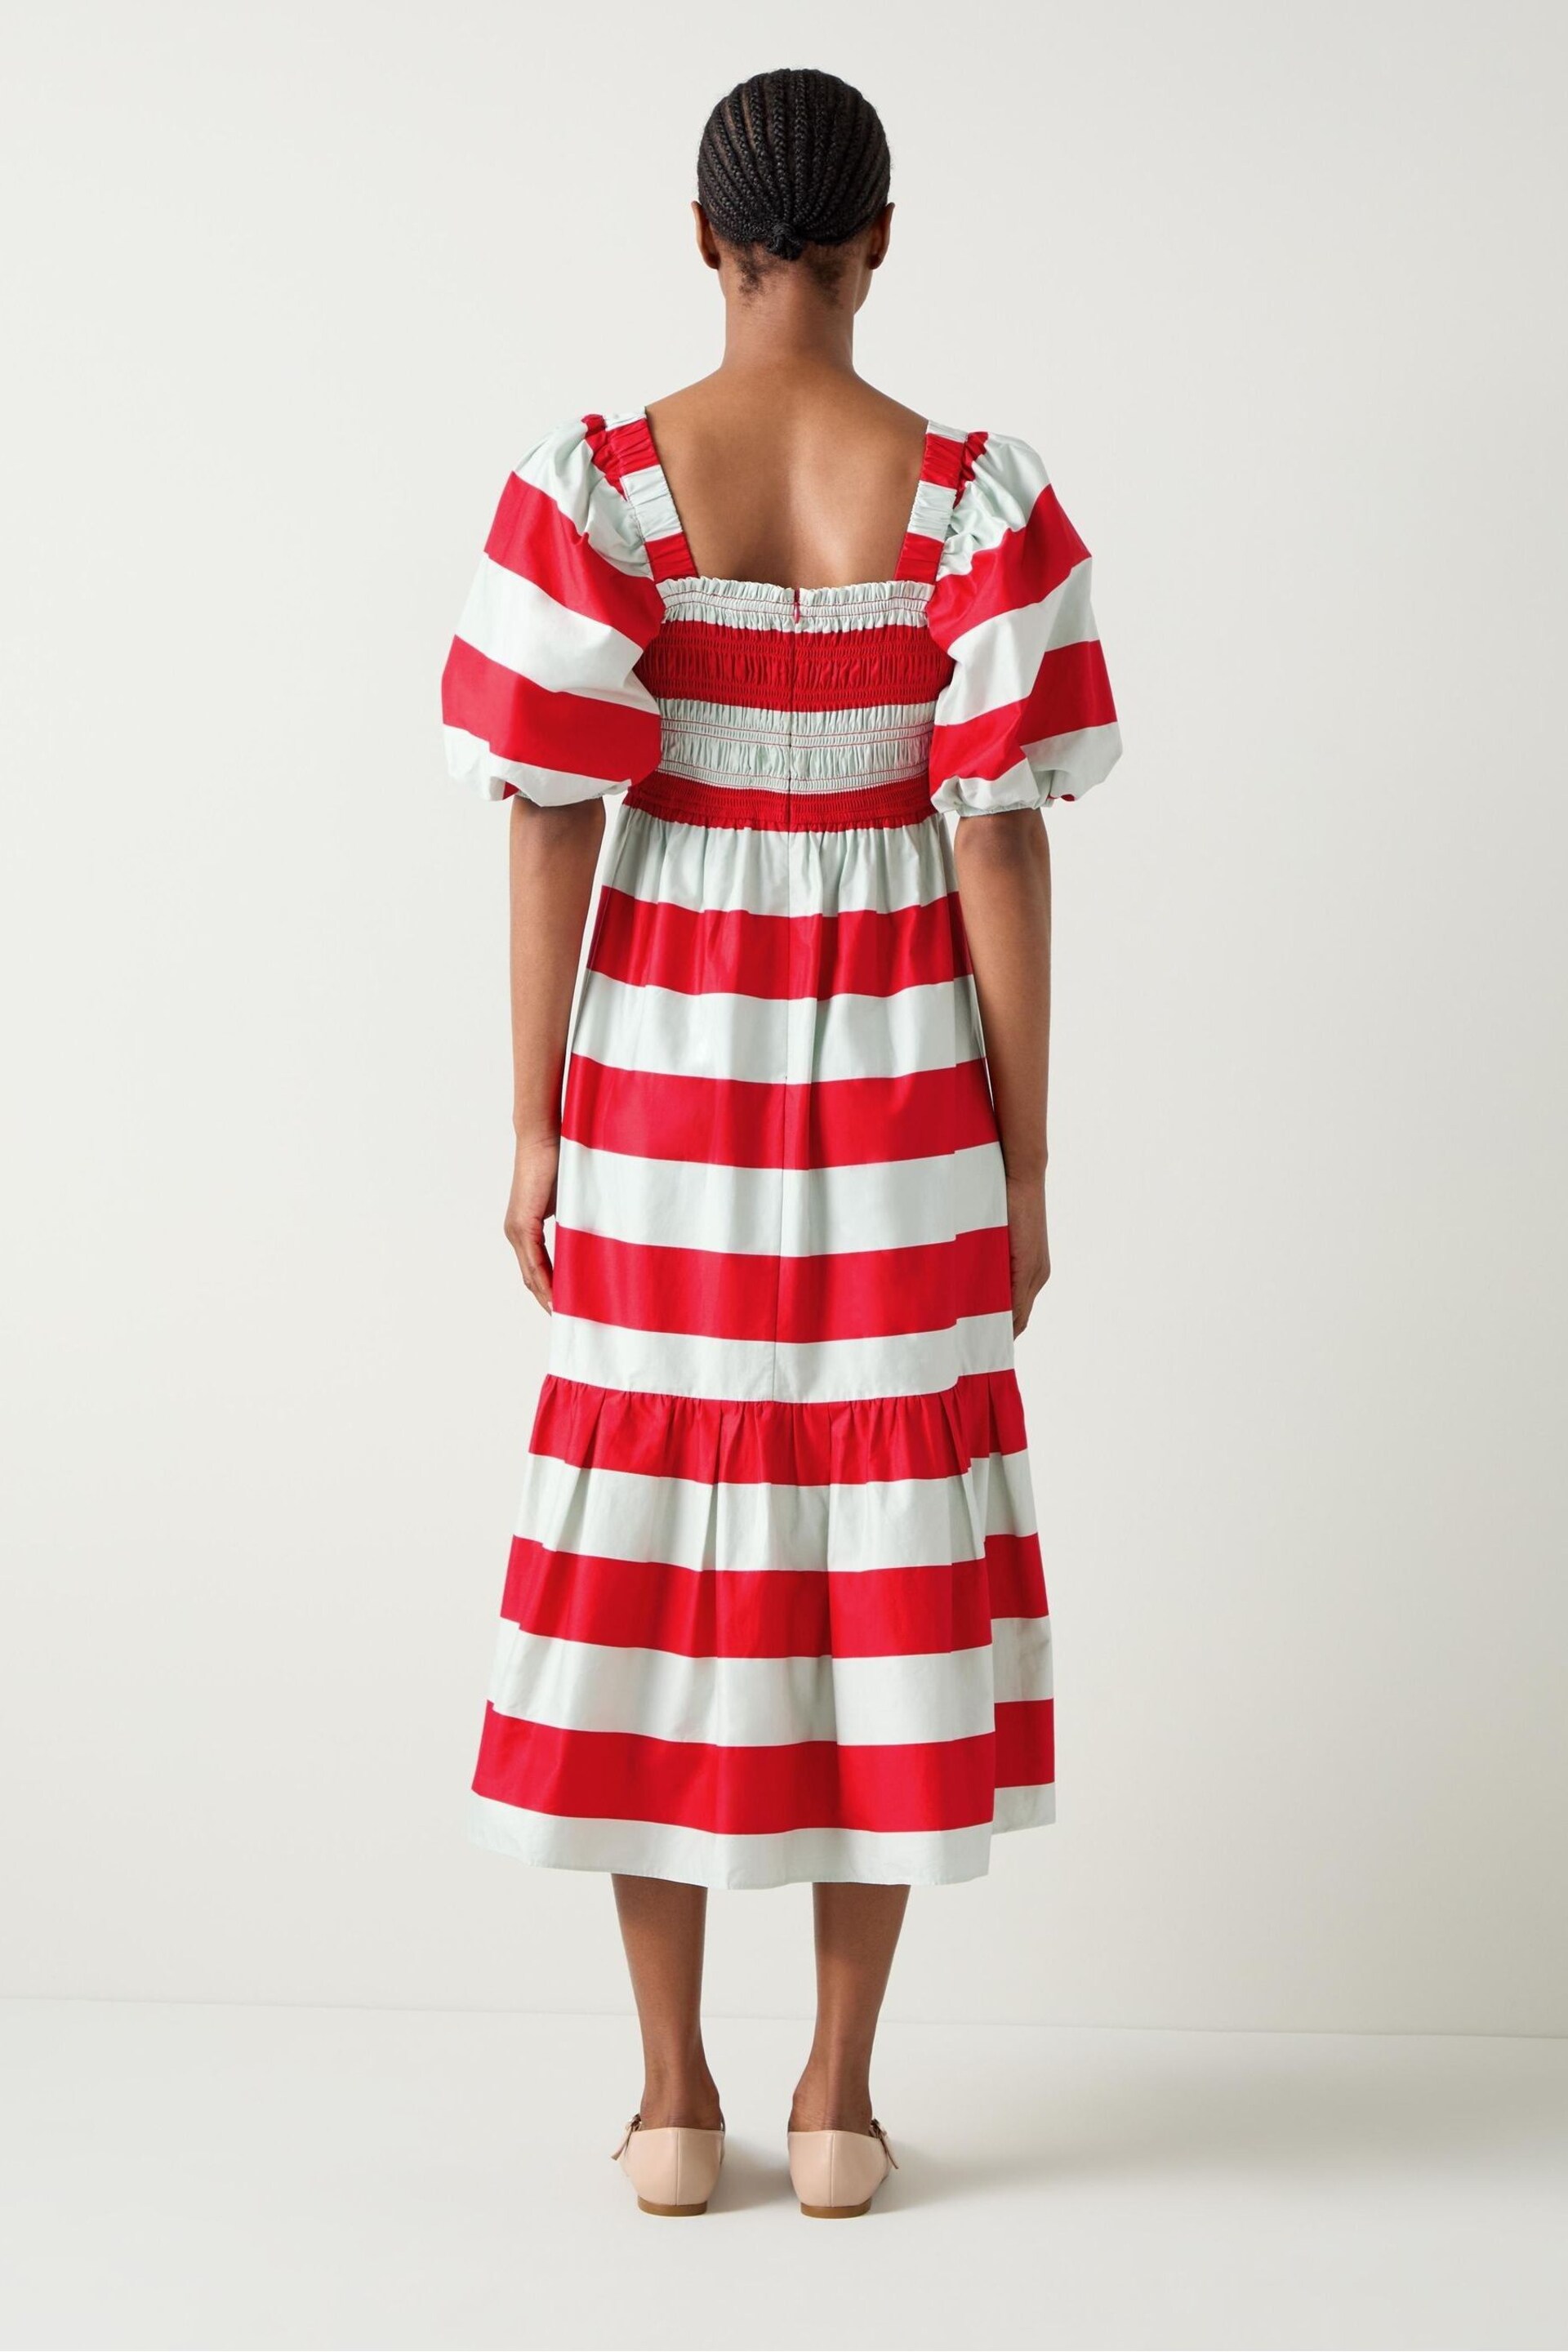 LK Bennett Ruby Stripe Print Dress - Image 2 of 5